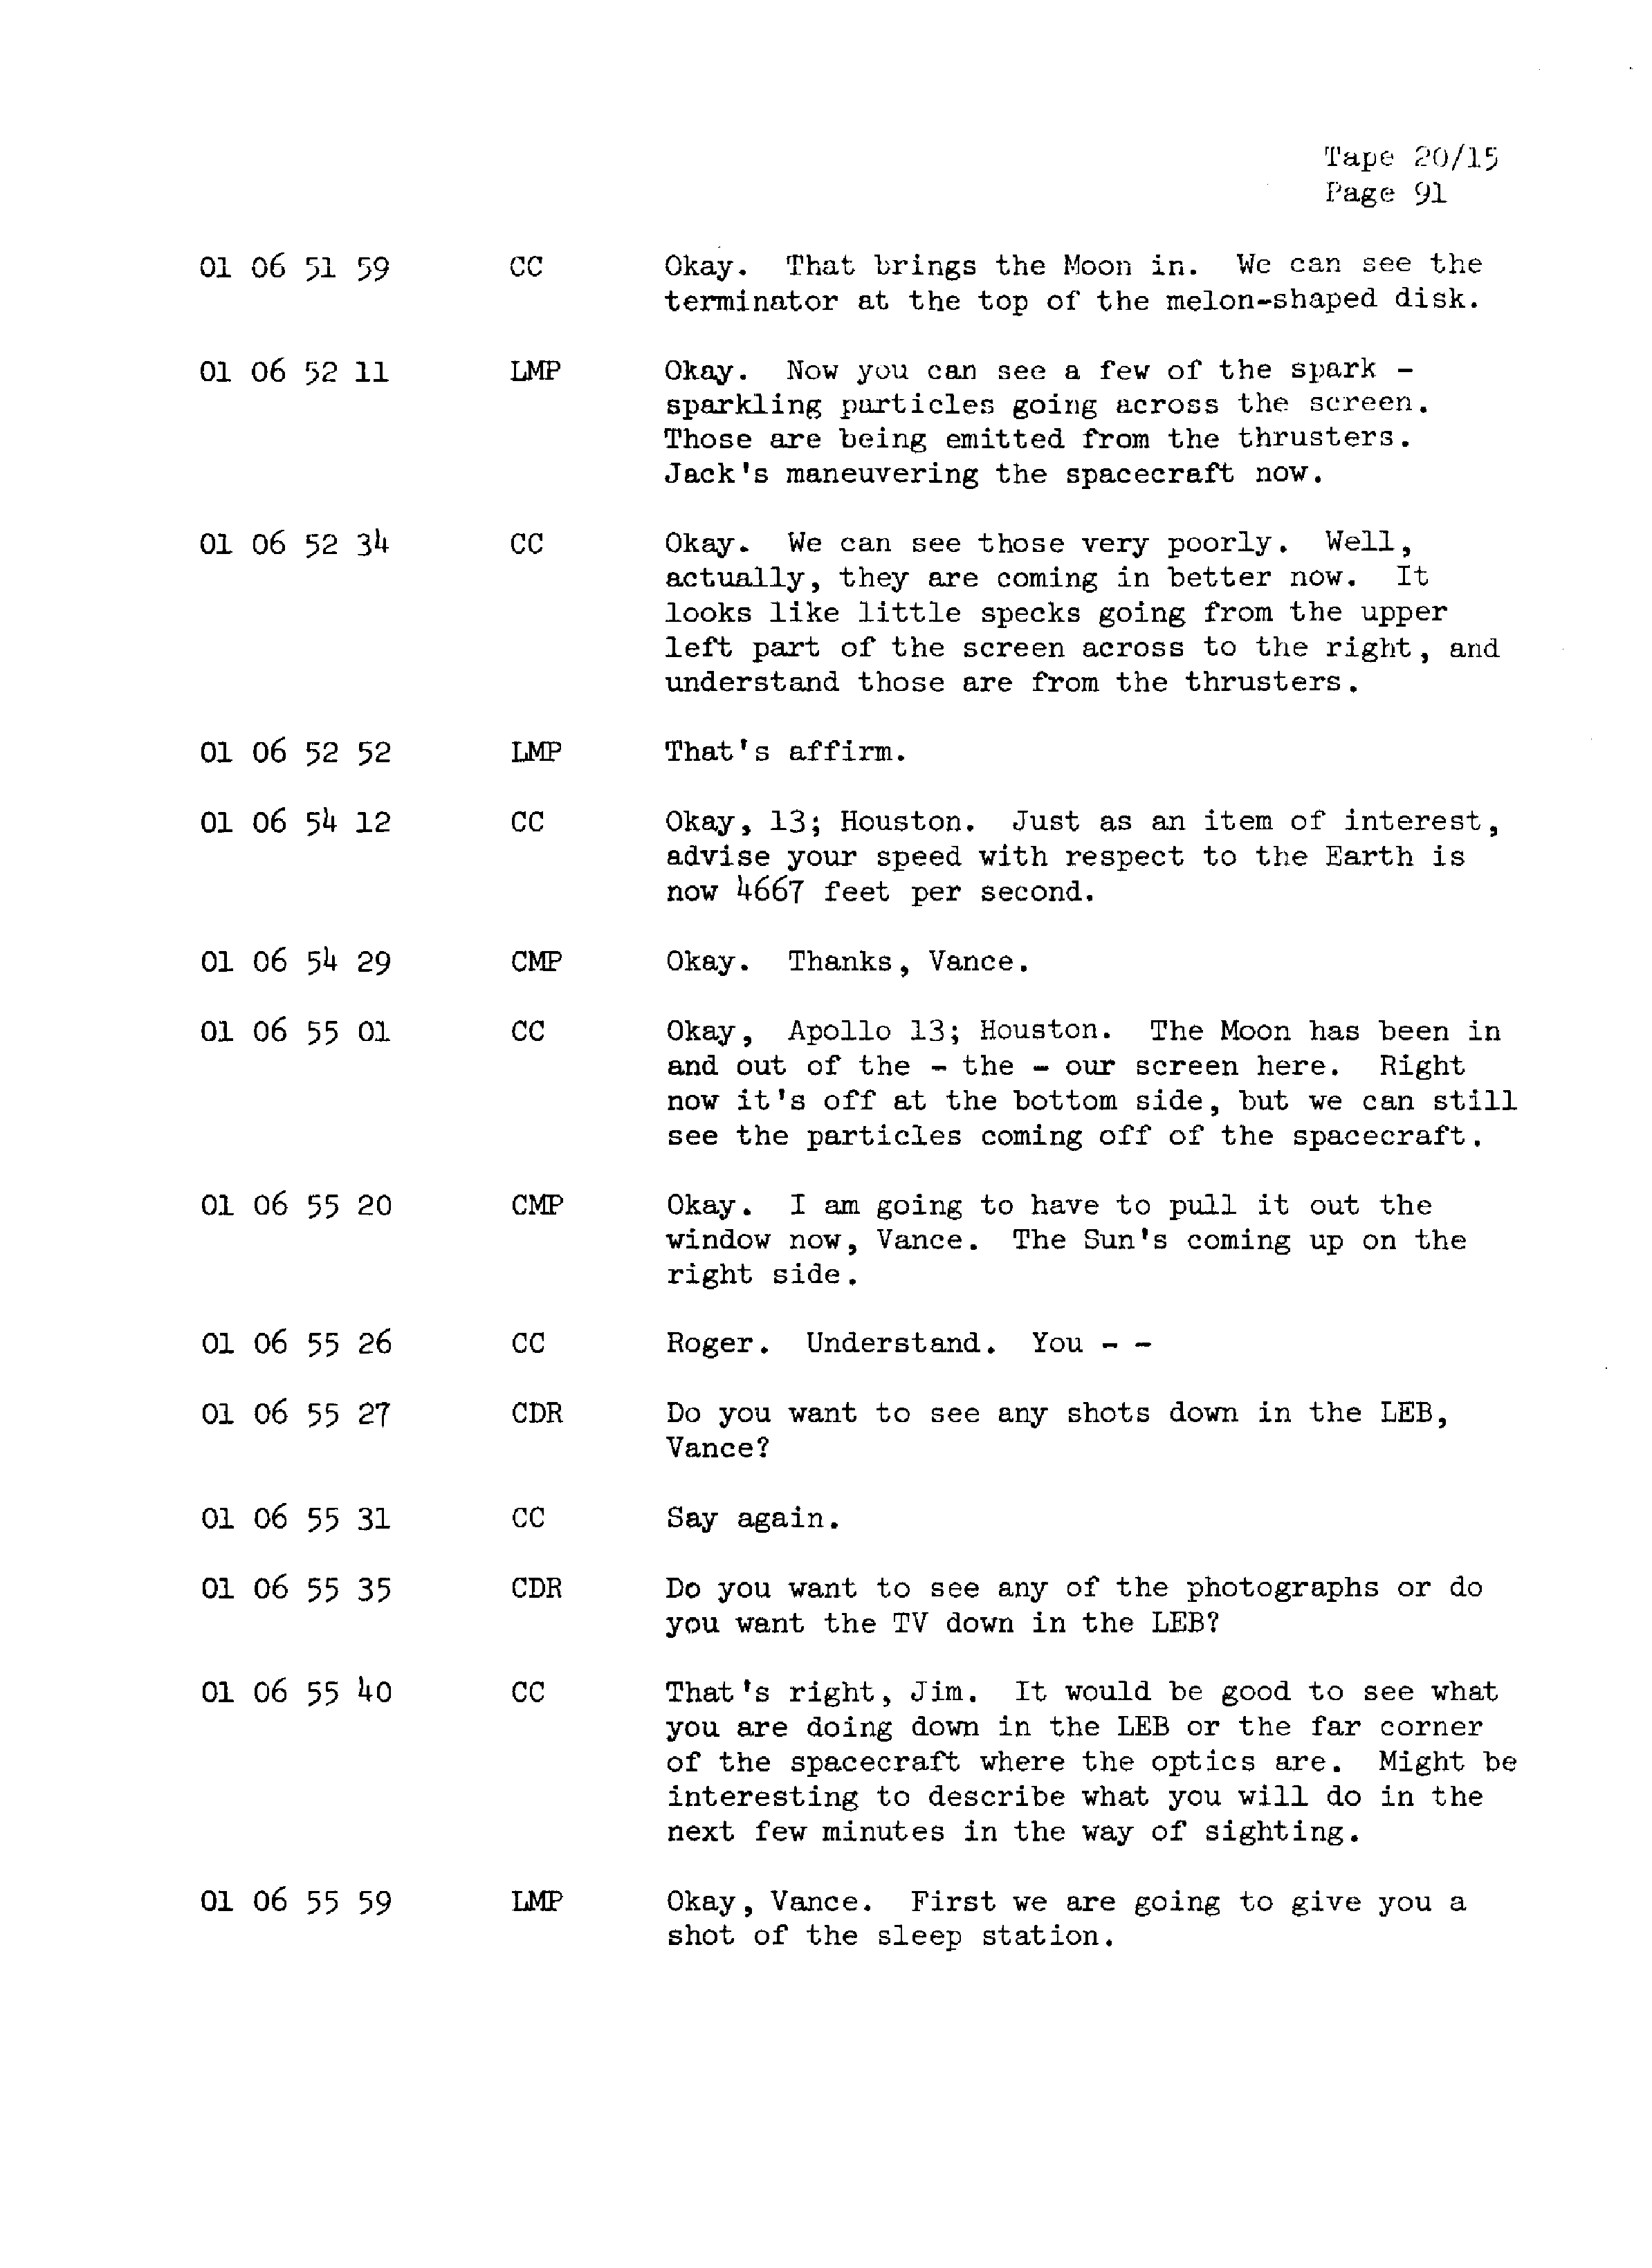 Page 98 of Apollo 13’s original transcript